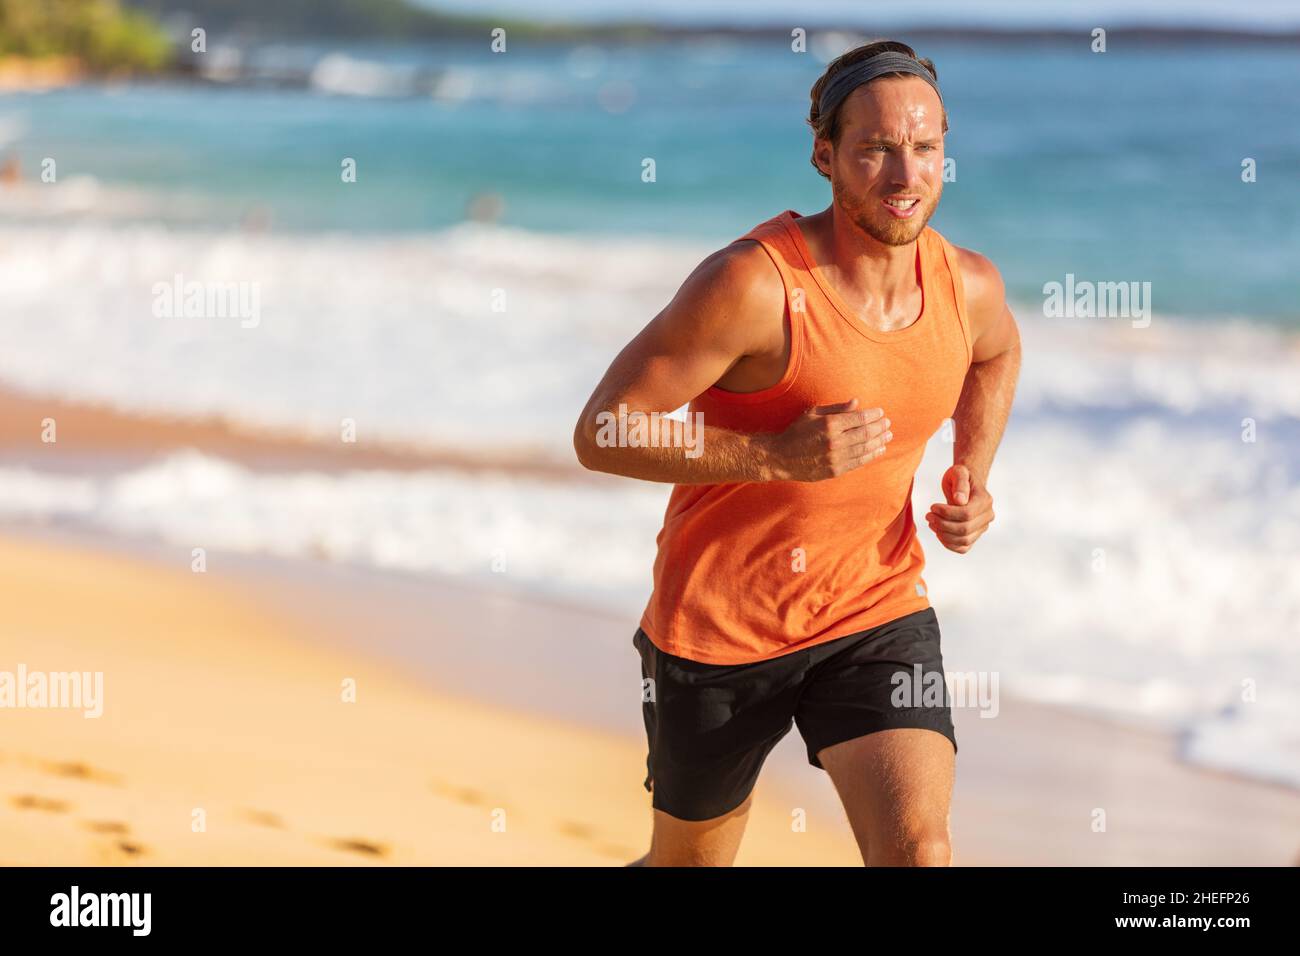 Laufsportler Mann am Strand Schwitzen Training Cardio auf intensives hiit-Training bei Sommertemperatur. Männlicher Läufer aktiver Sport-Lifestyle Stockfoto